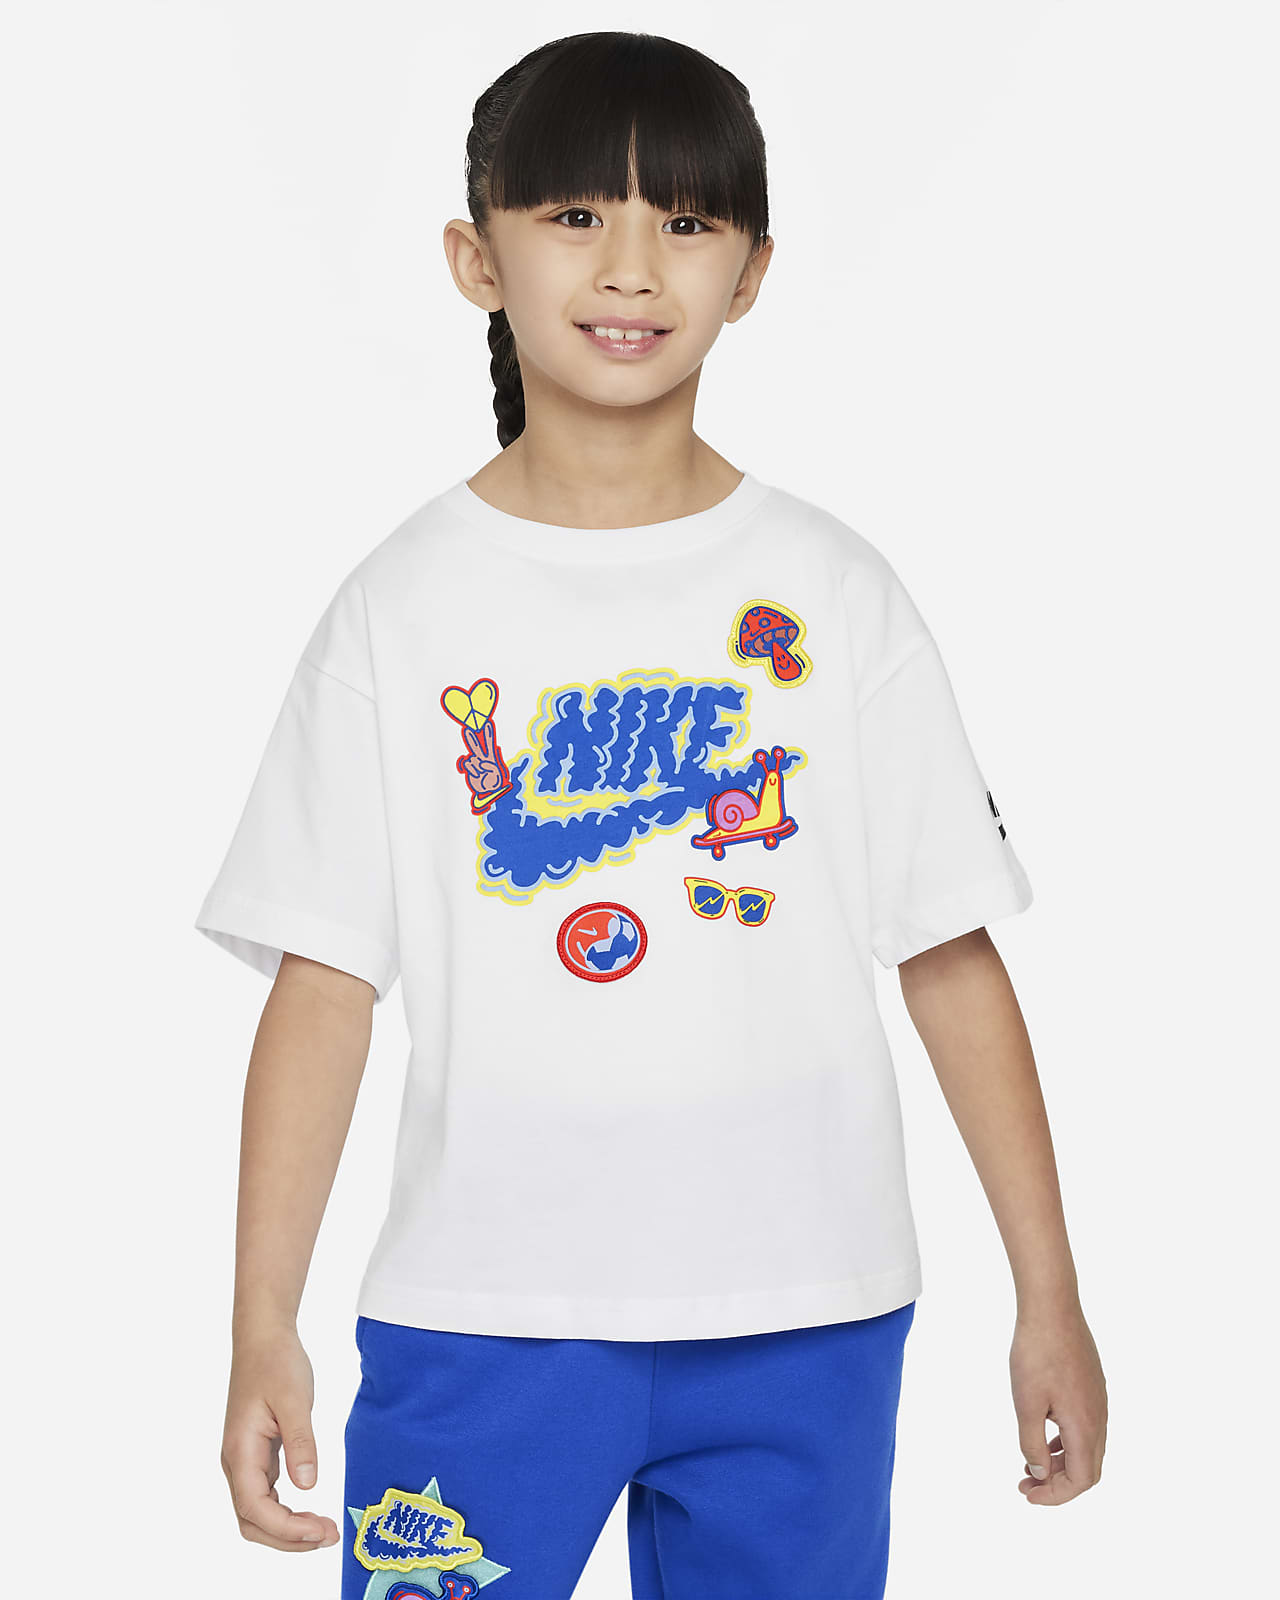 Nike "You Do You" 幼童T恤